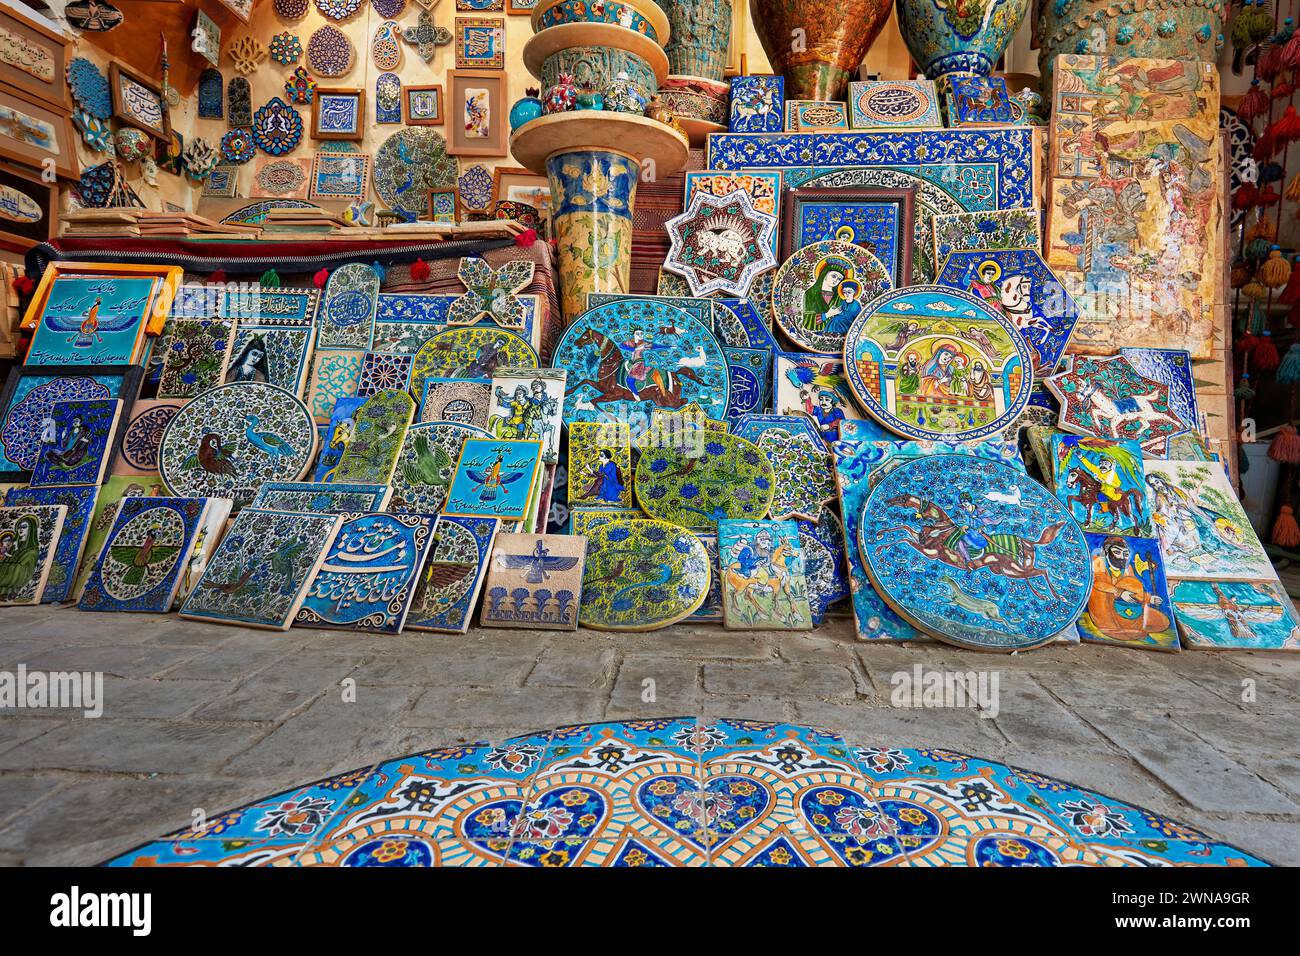 Eine Auswahl handgemachter Töpferwaren und Keramiken in einem Souvenirladen im historischen Viertel Fahadan in Yazd, Iran. Stockfoto